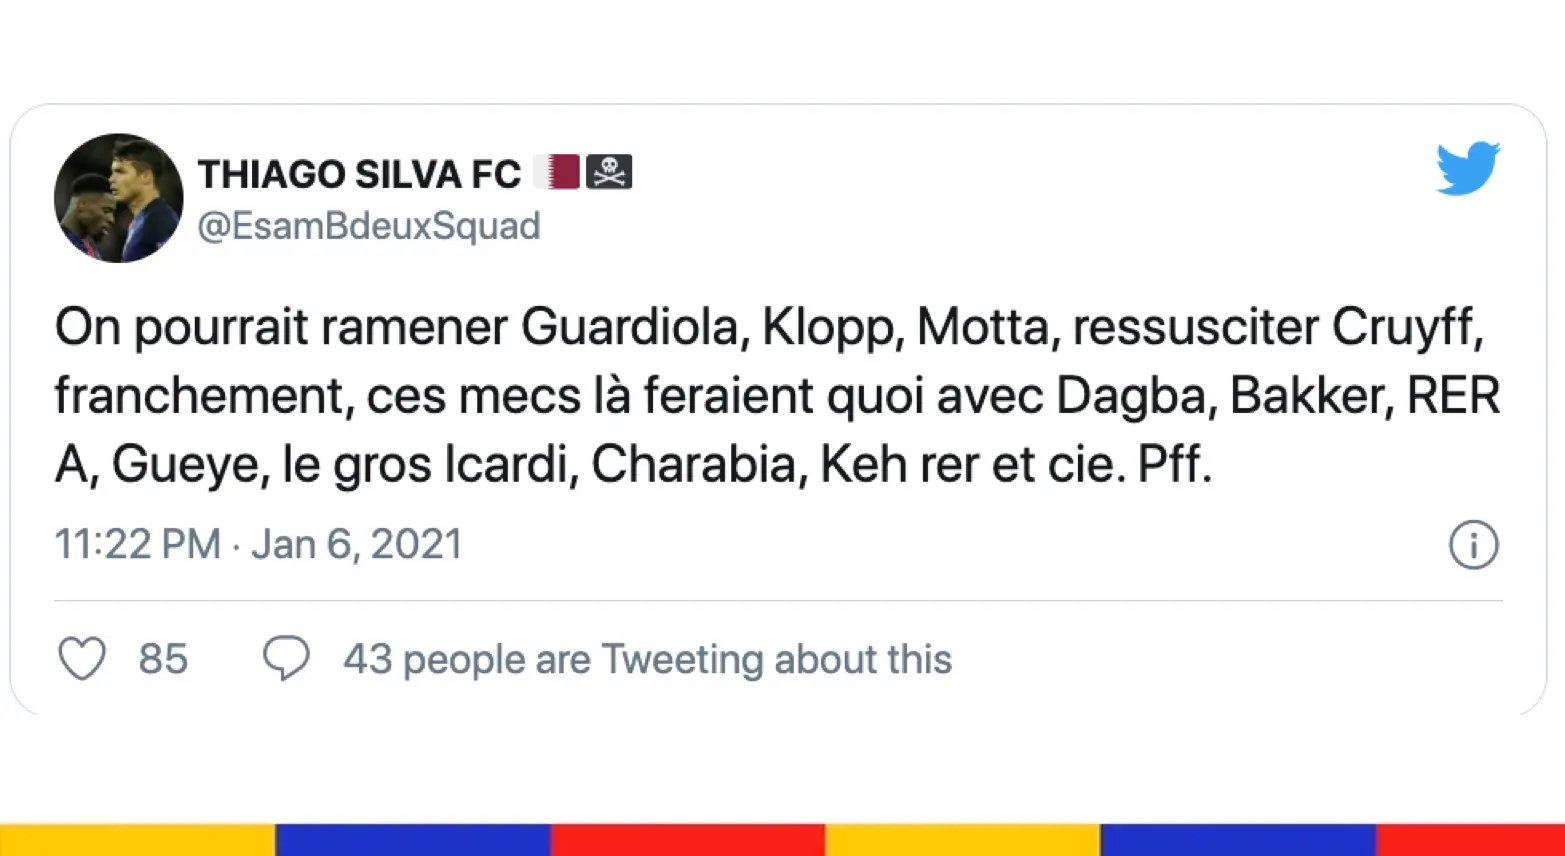 Le grand n’importe quoi des réseaux sociaux : 18e journée de Ligue 1